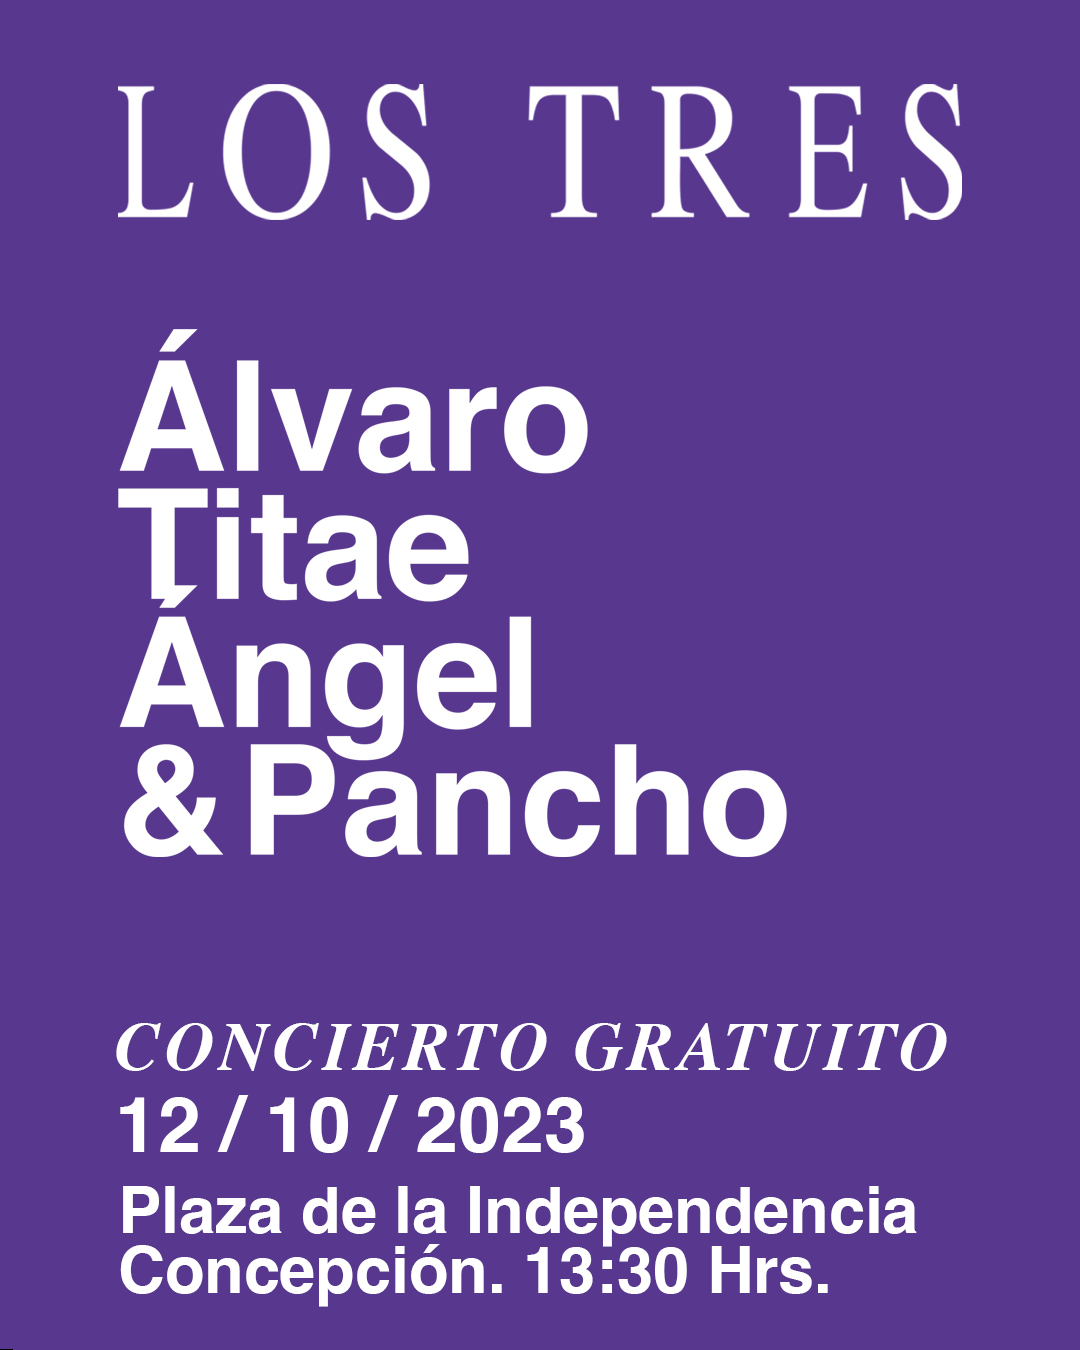 Los Tres show gratuito en Concepción